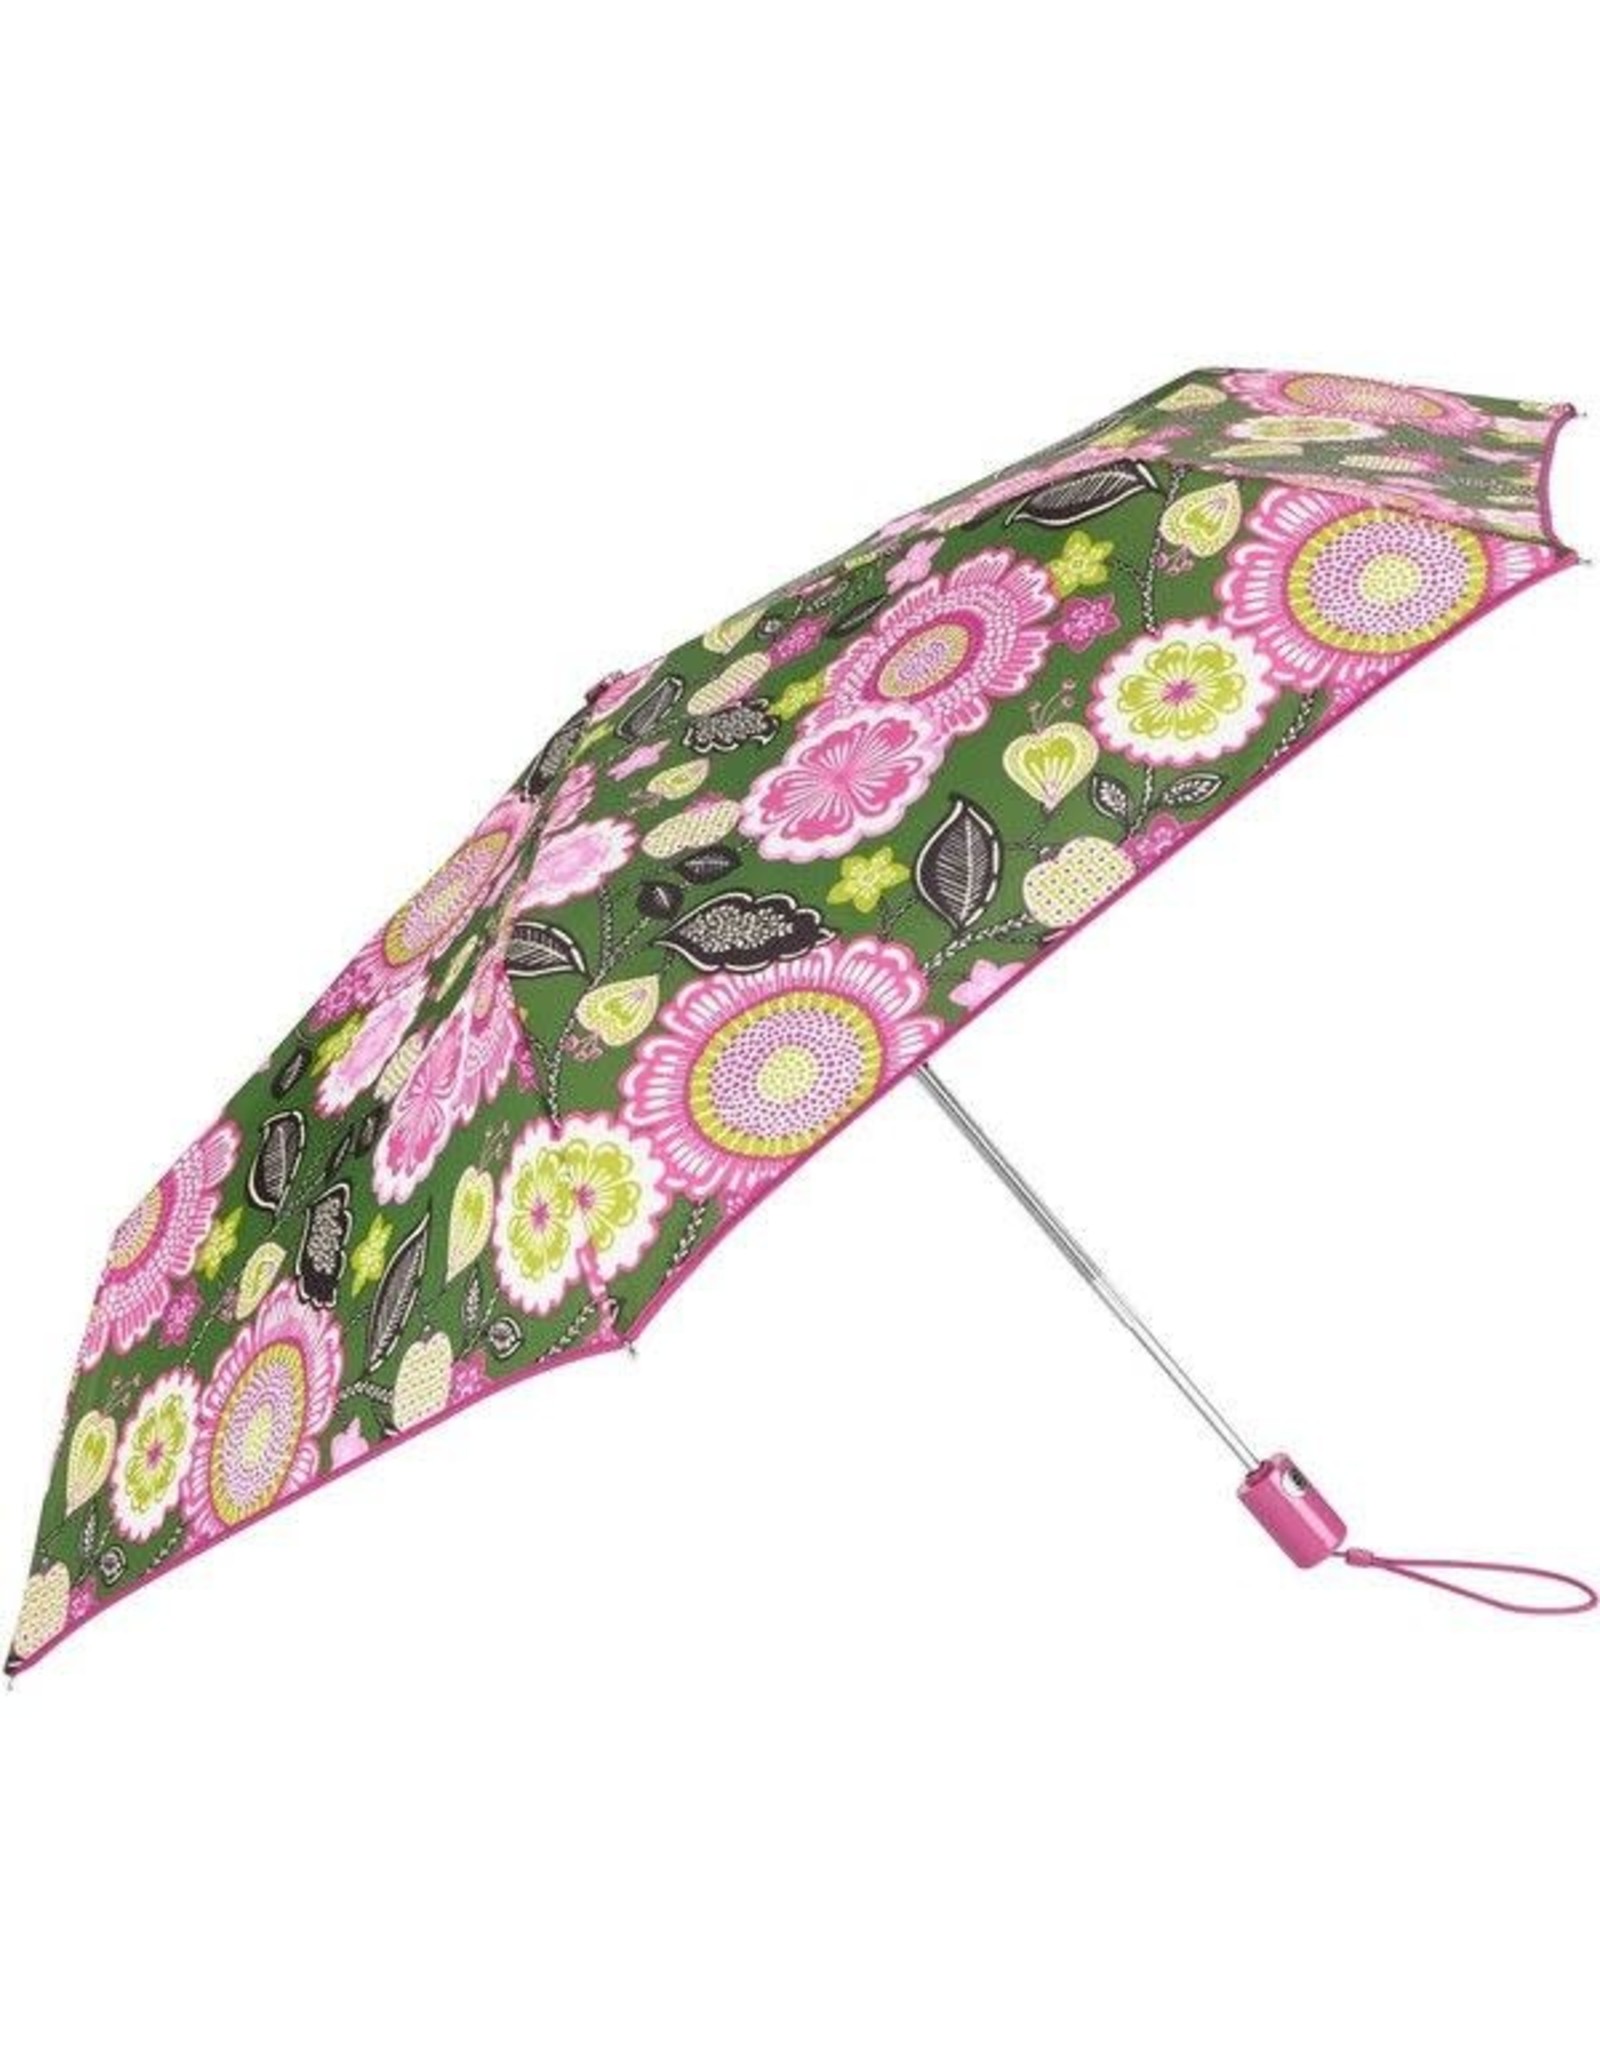 Umbrella in Olivia Pink